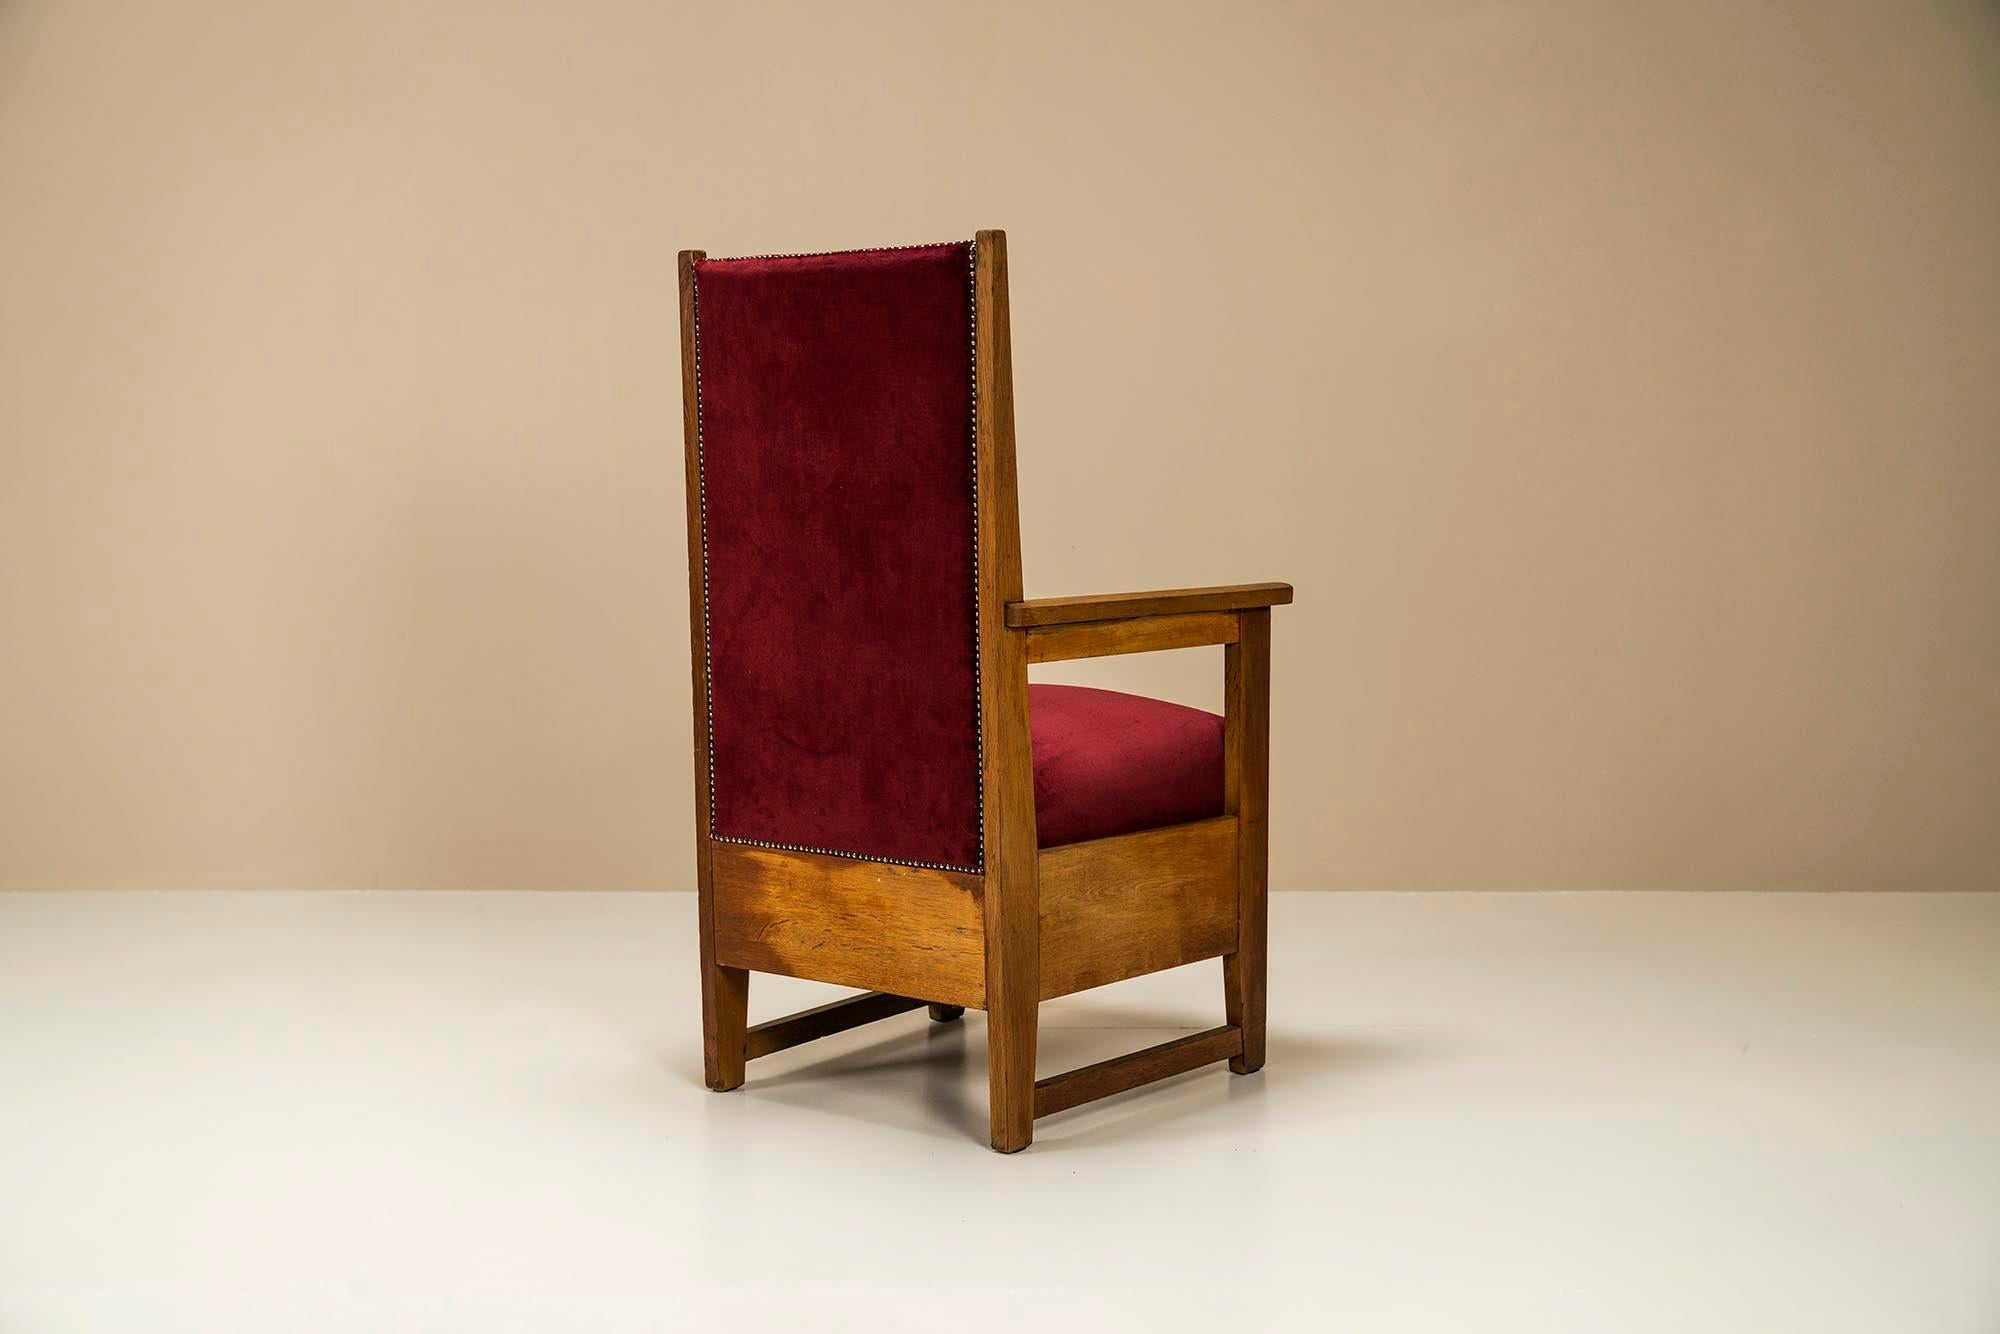 1930s high chair